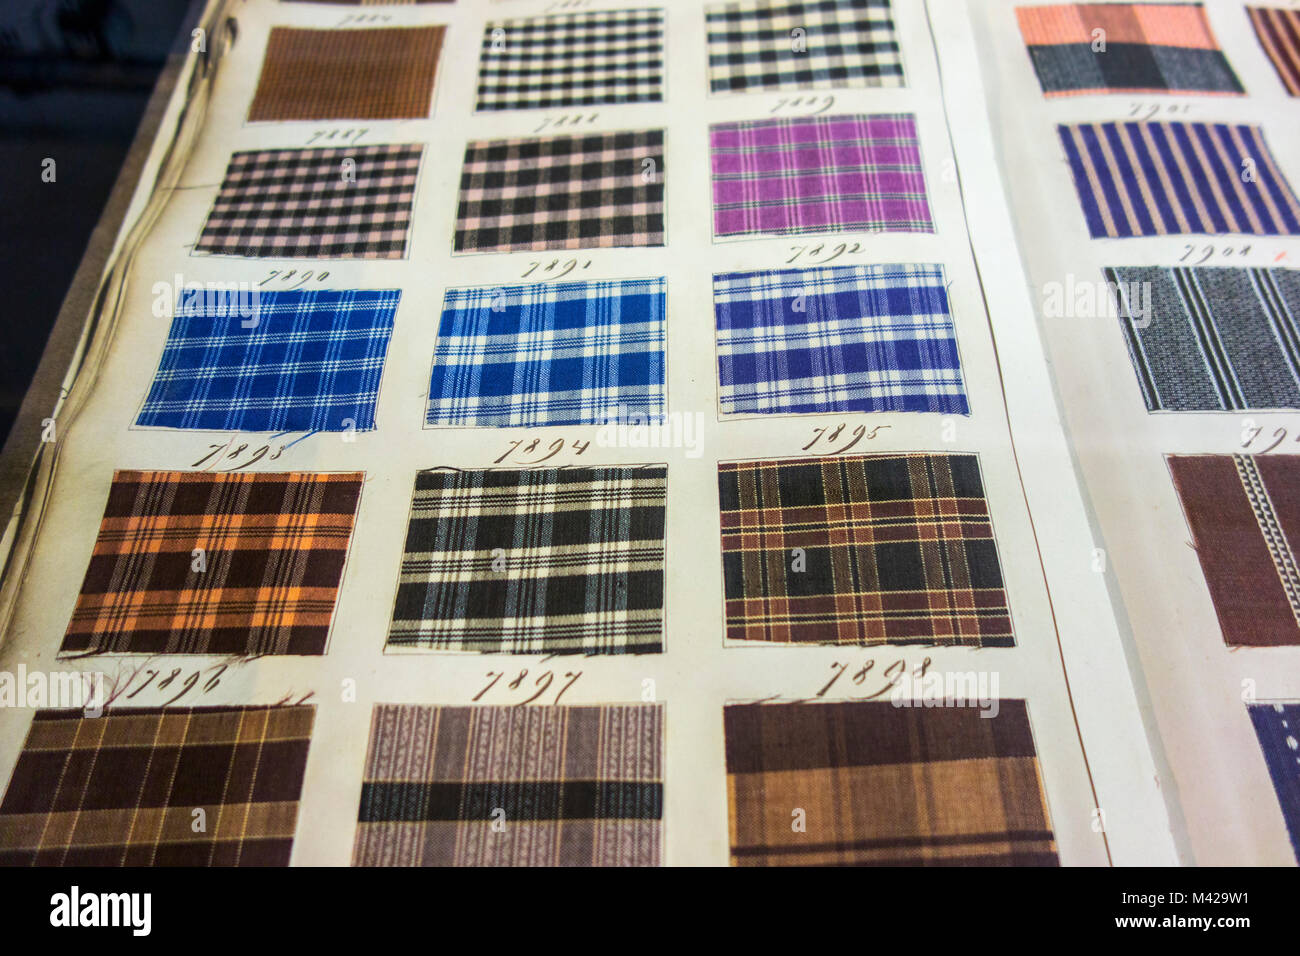 Seite in alten Textil Musterbuch mit kariertem Stoff weben Proben mit verschiedenen Mustern und Farbkombinationen Stockfoto